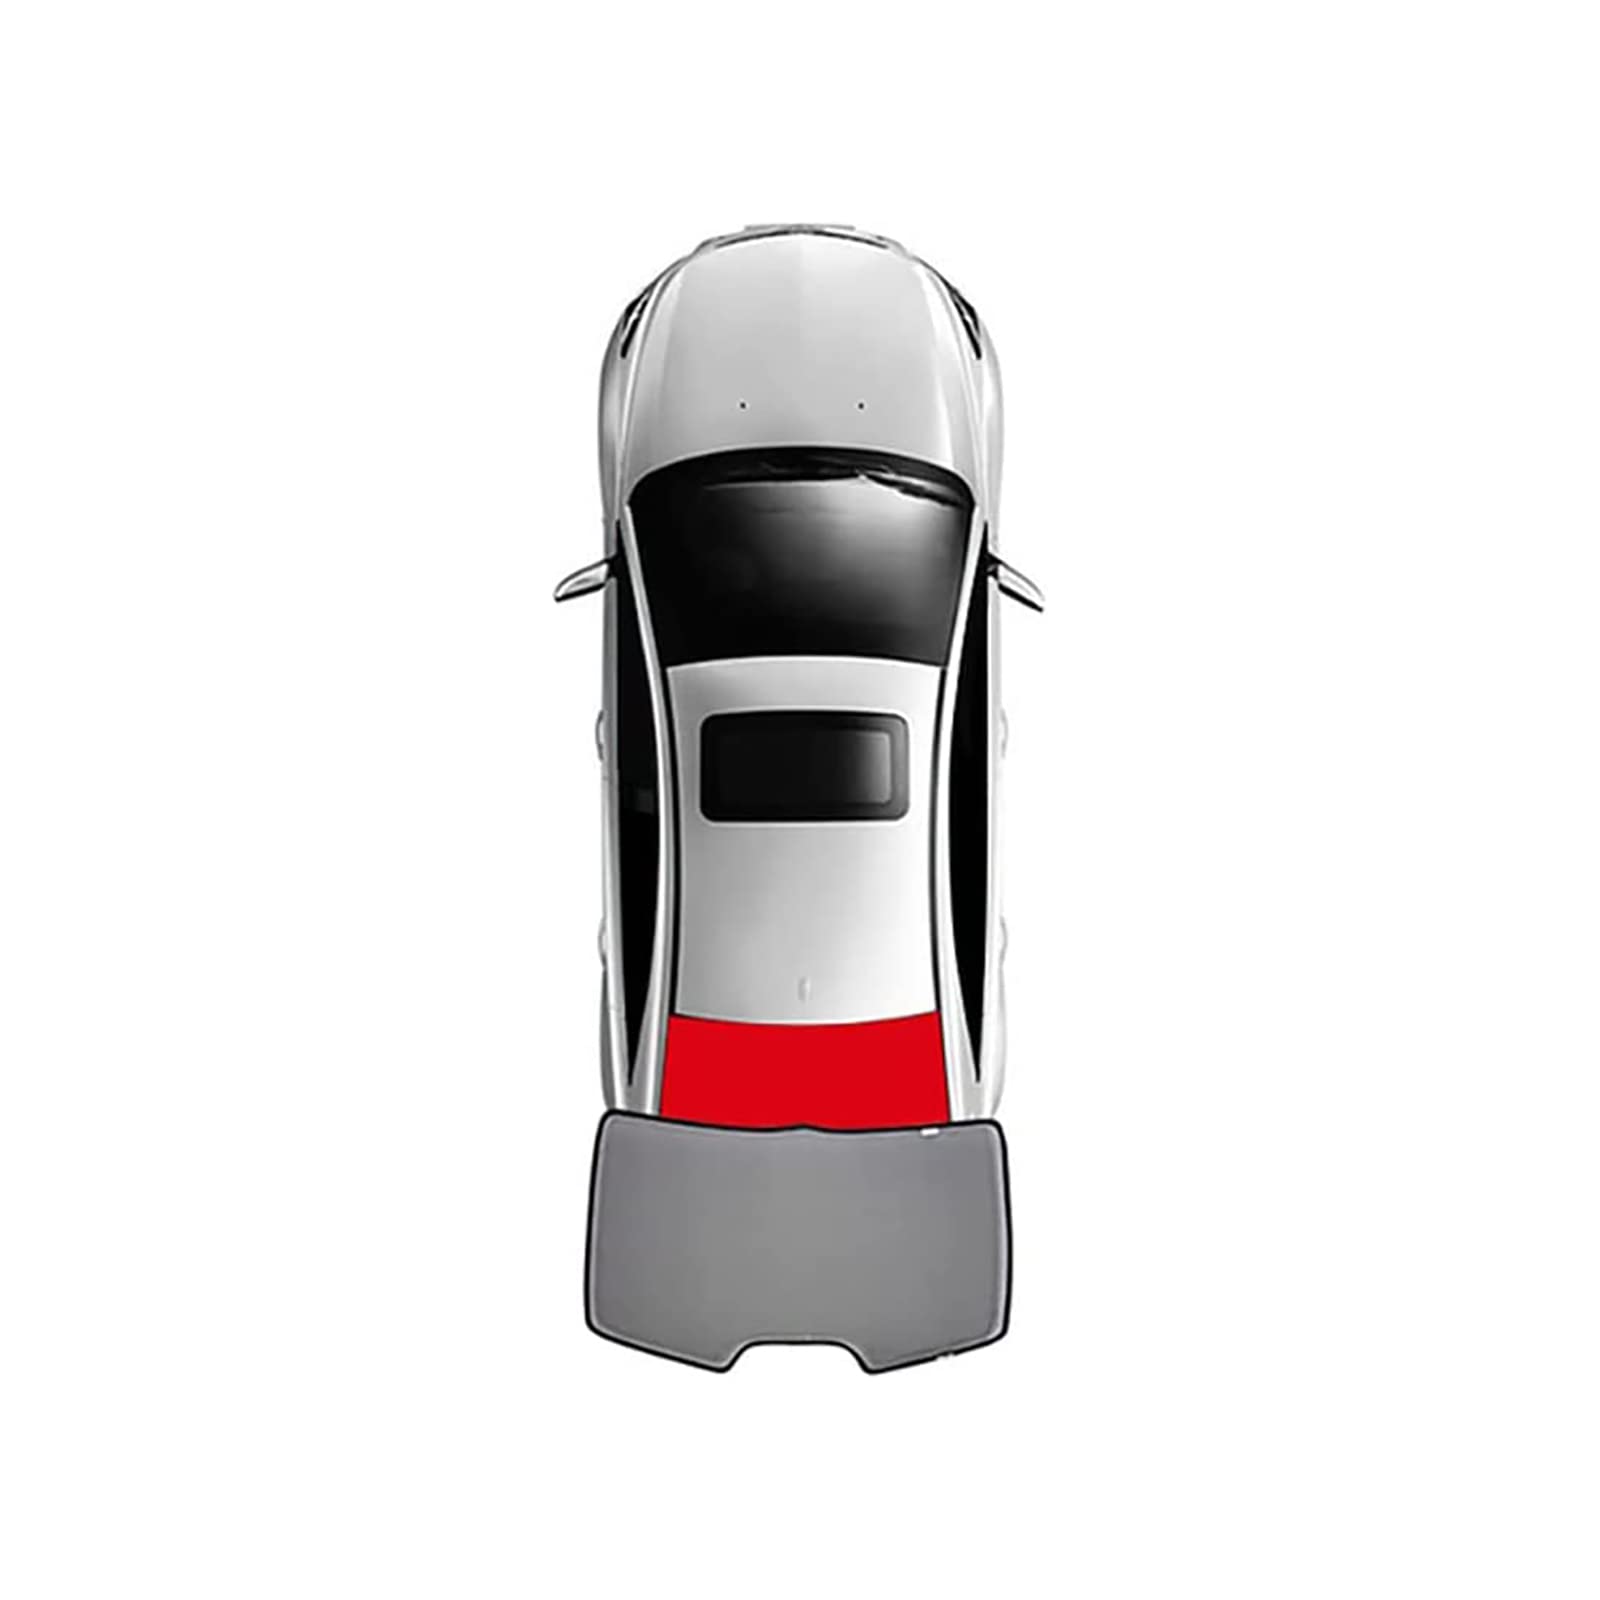 Auto Seitenfenster Sonnenschutz für BMW 1 Series hatchback F20 2011-2018, Vordere und Hintere Seitenfenster Atmungsaktives UV Schutz Privacy Protection Sonnenschutz Accessories,1pcs Rear von MSTMAZZ